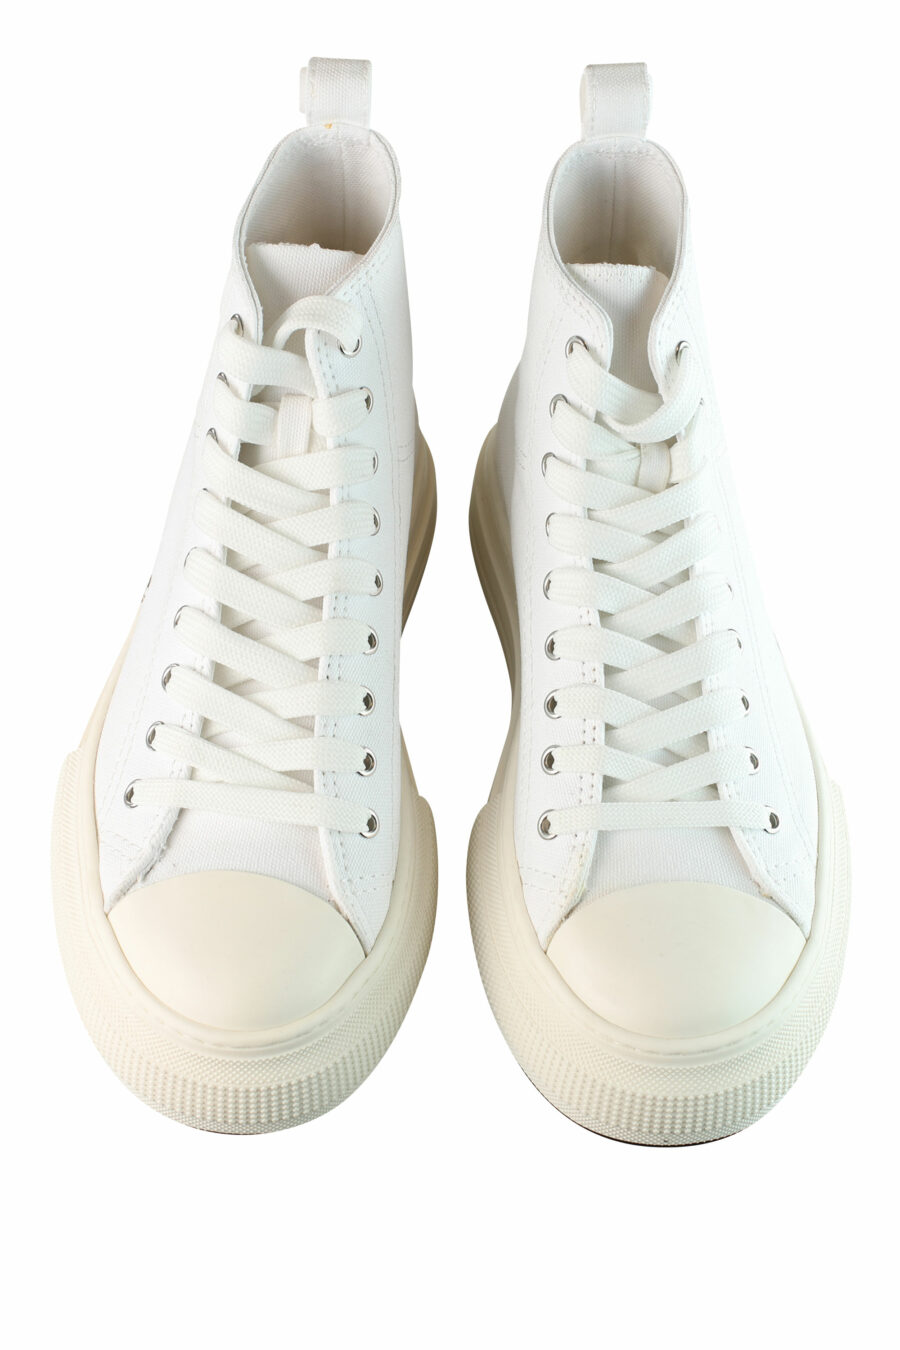 Sapatilhas brancas estilo bota com plataforma e mini logótipo - IMG 1451